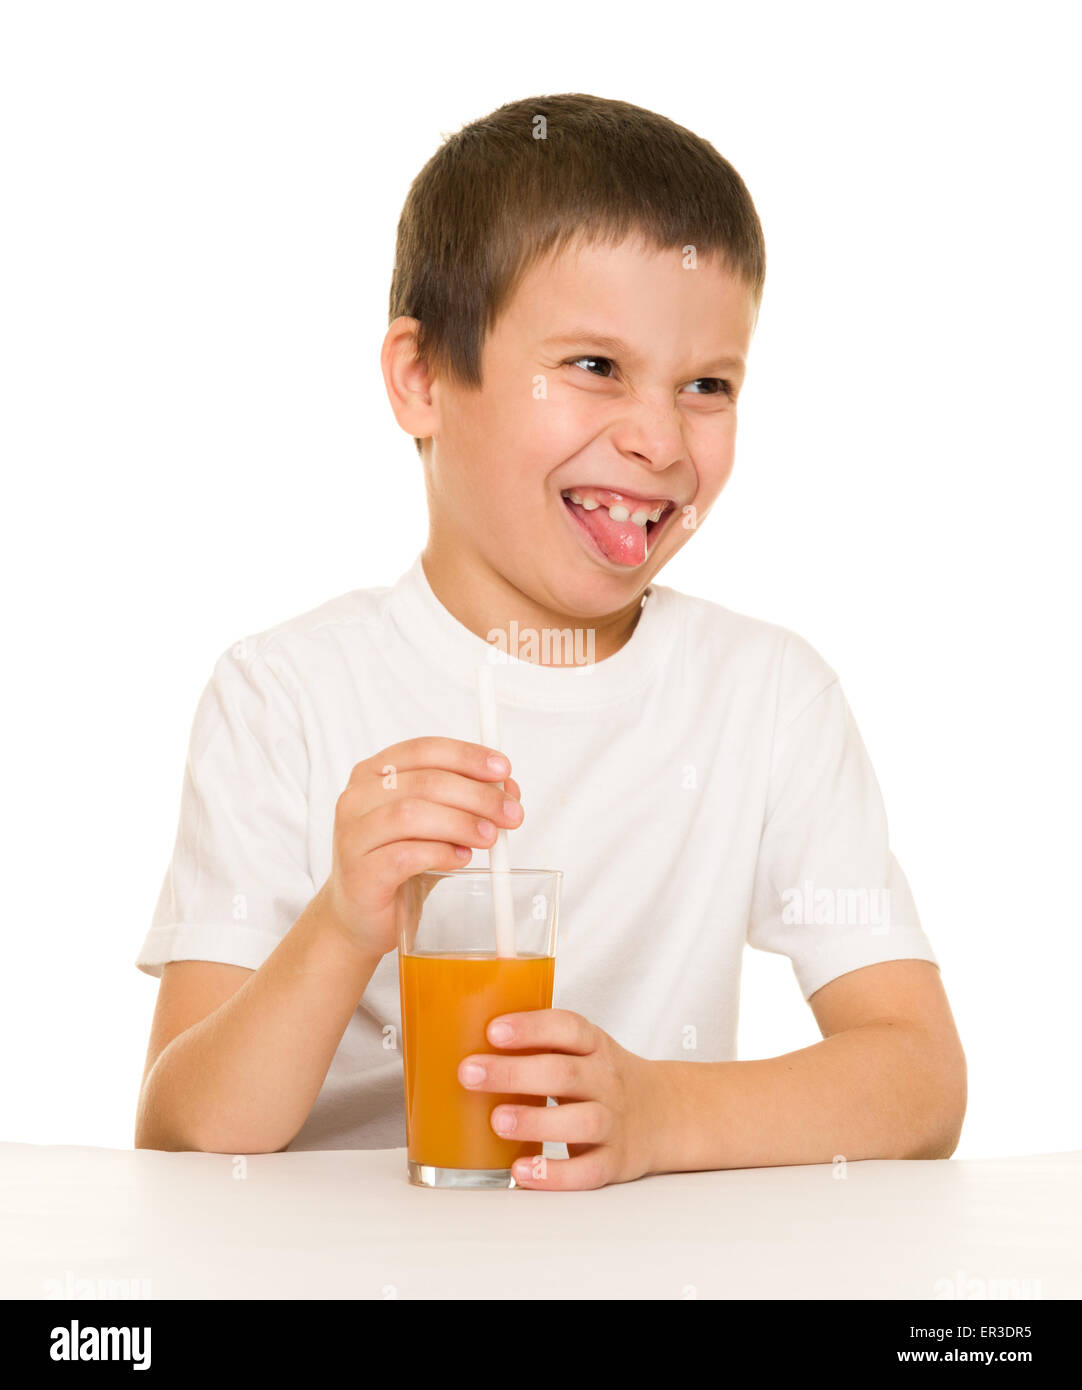 boy drink orange juice with a straw Stock Photo